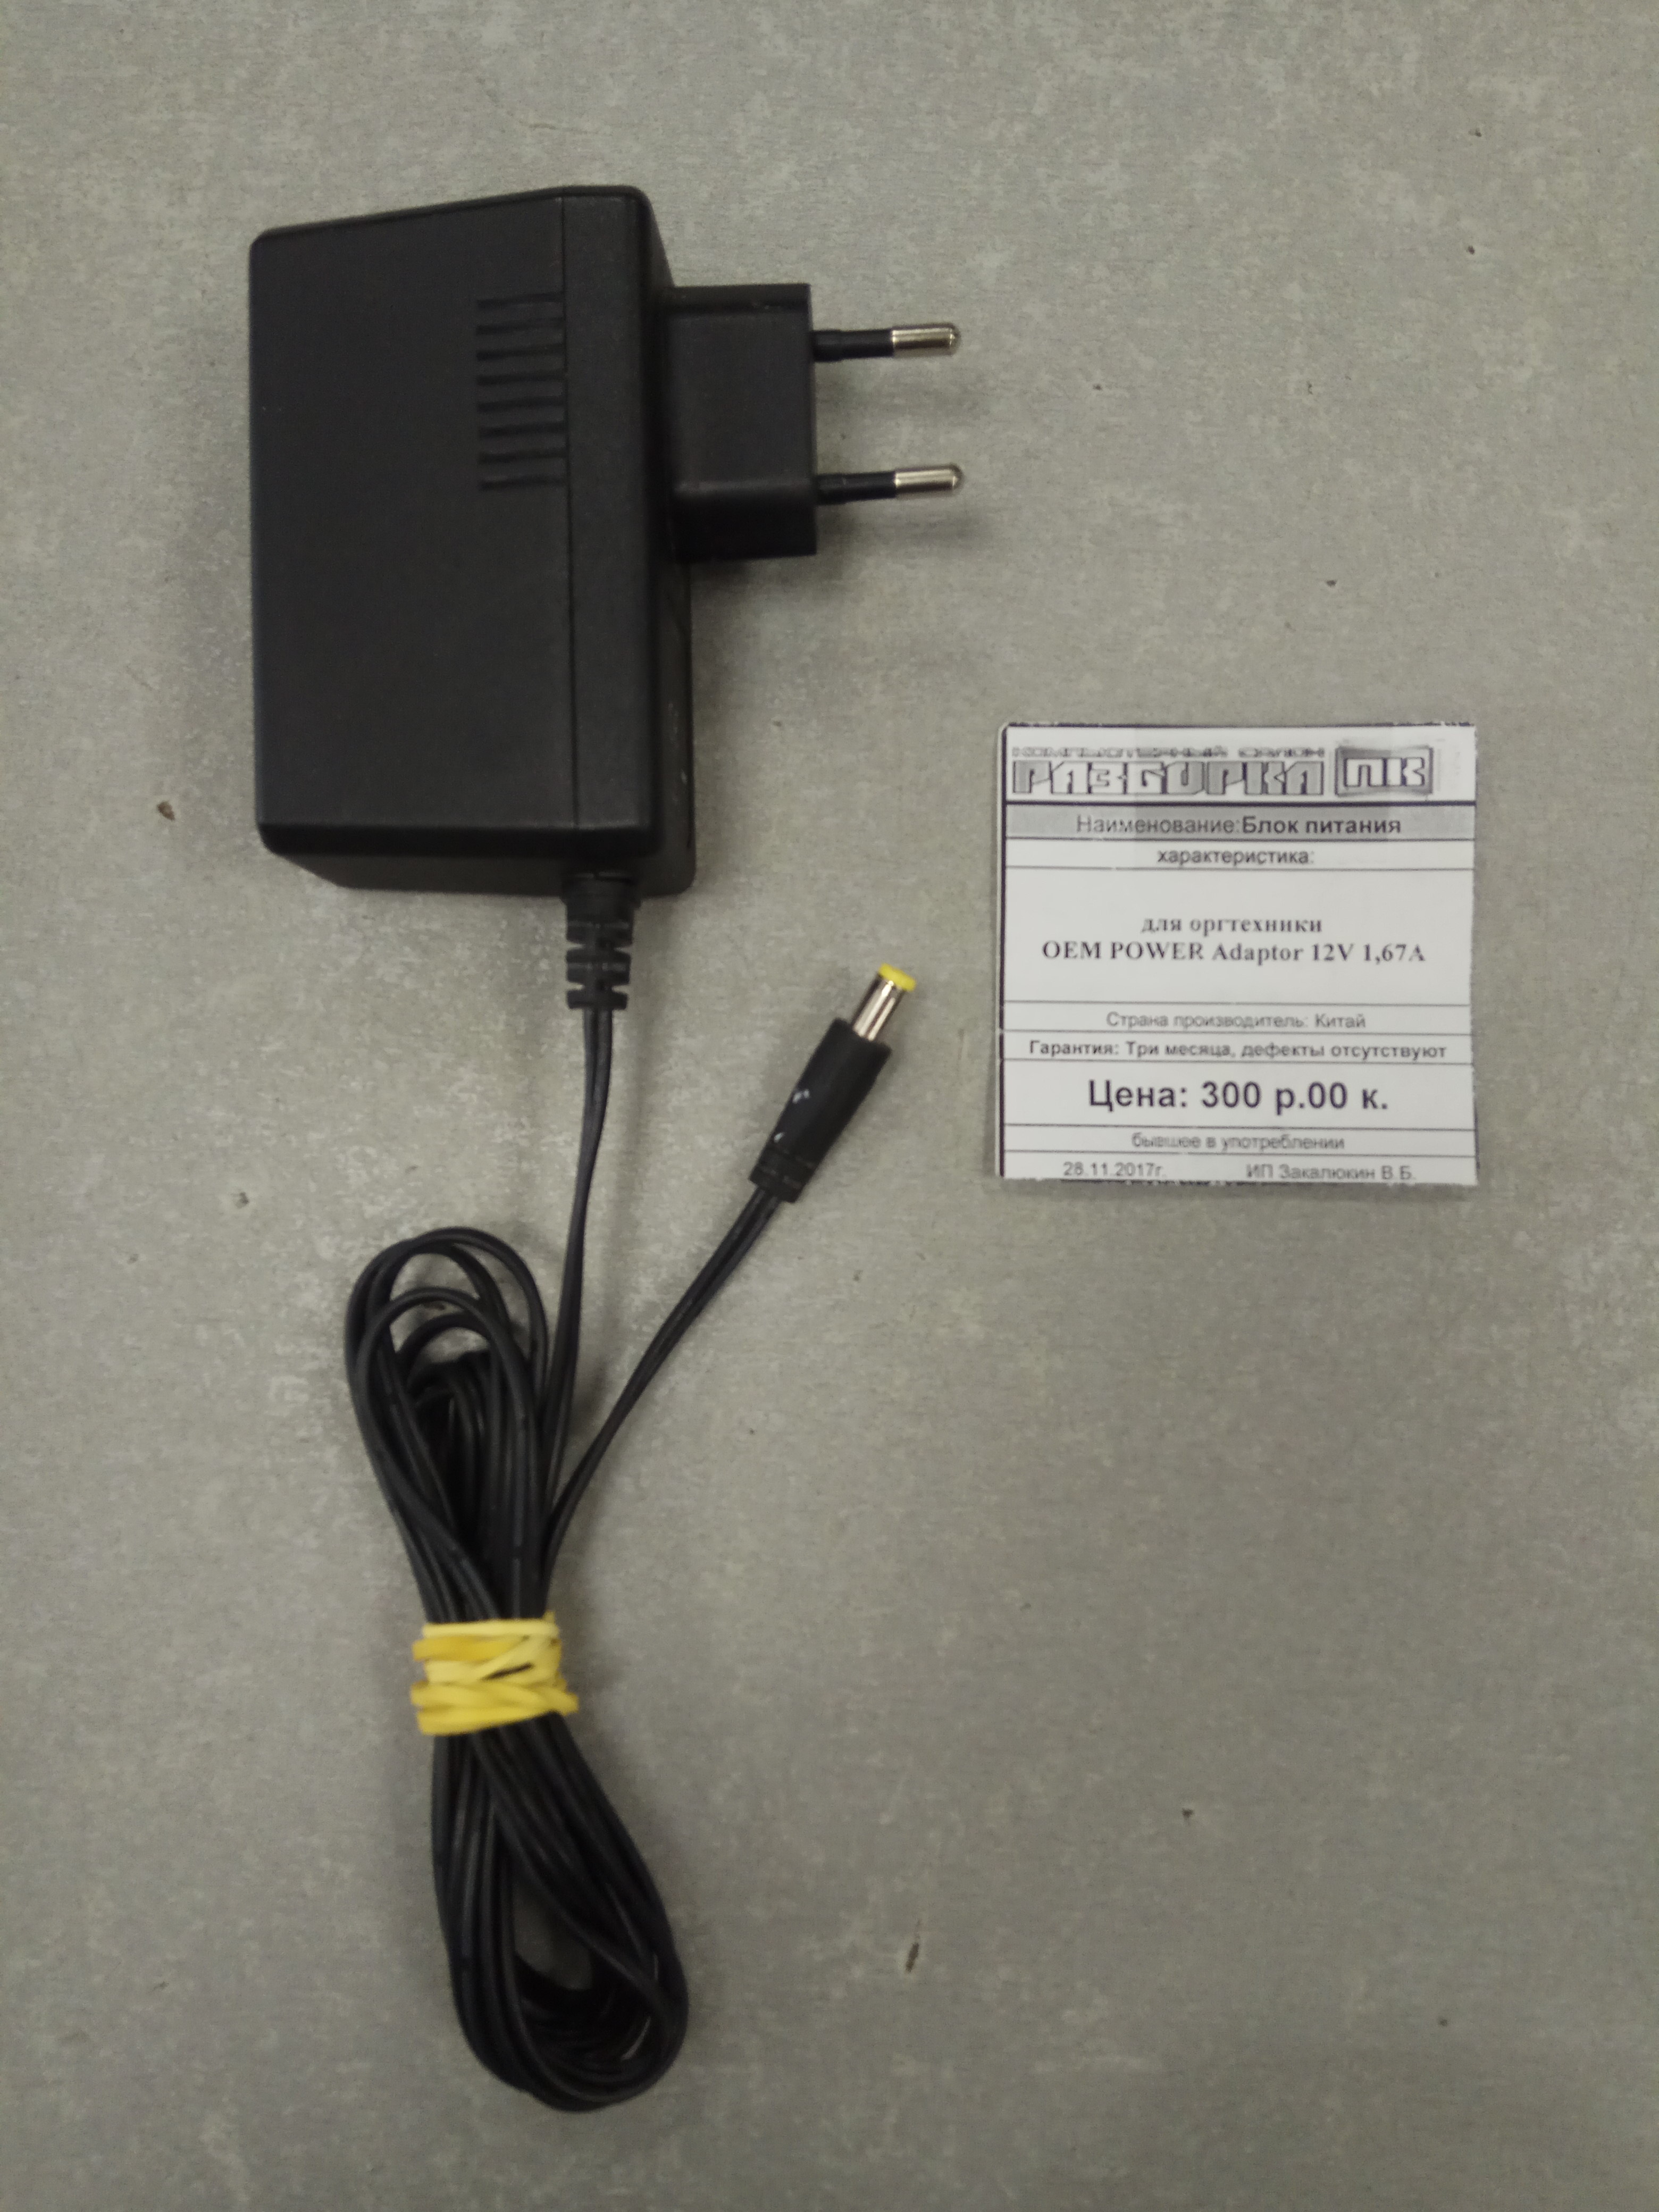 Блок питания для оргтехники 12V 1.67A OEM Power Adaptor